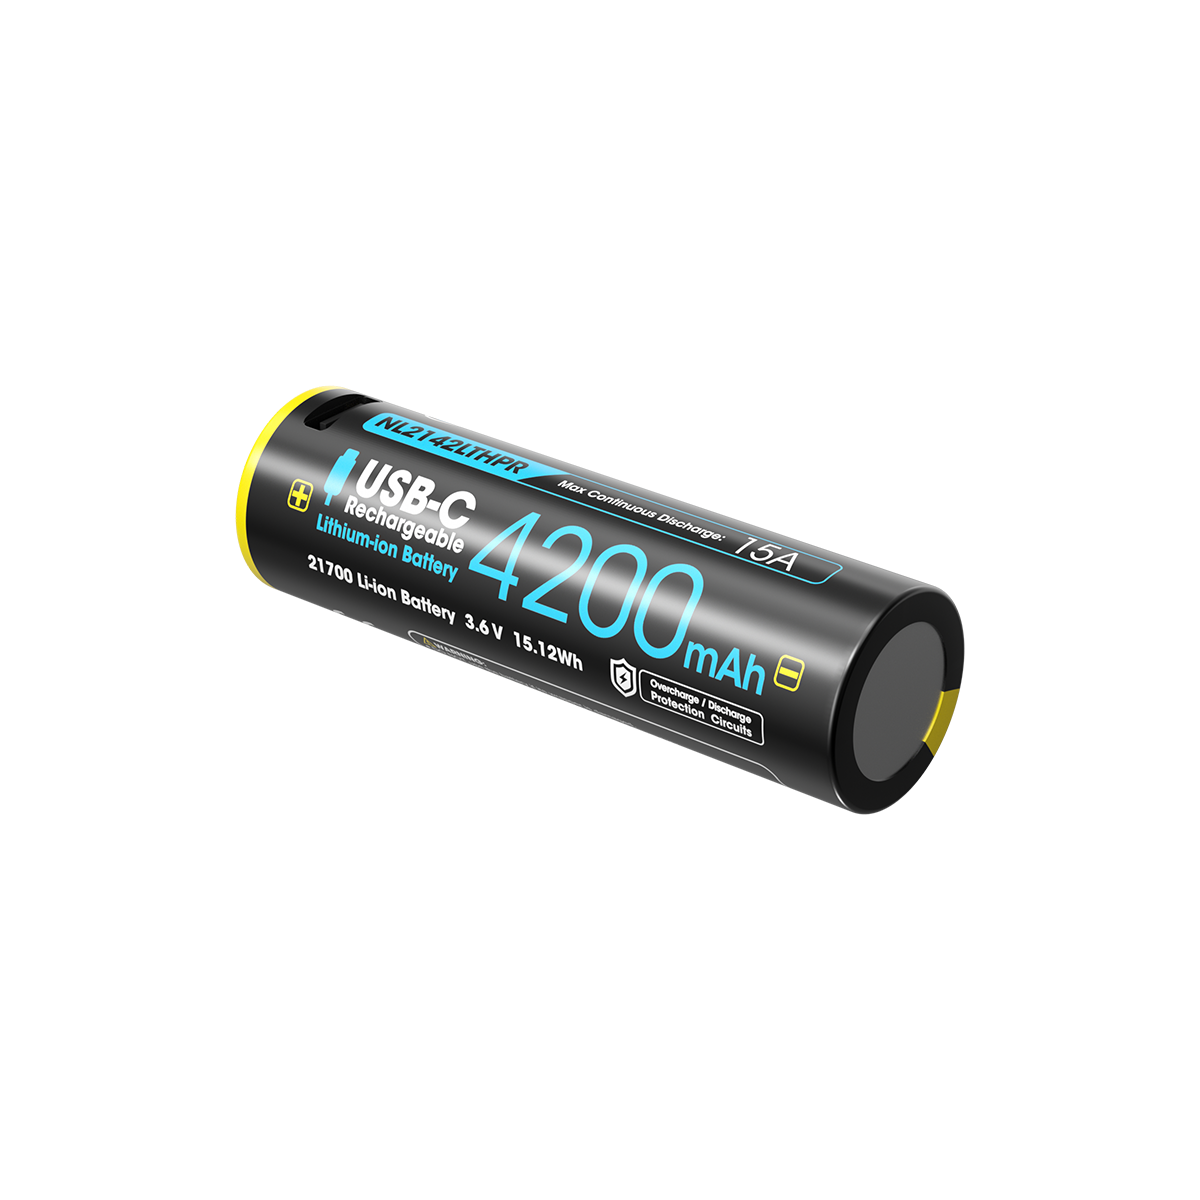 奈特科尔电池 NL2142LTHPR 21700 锂离子电池 4200mAh